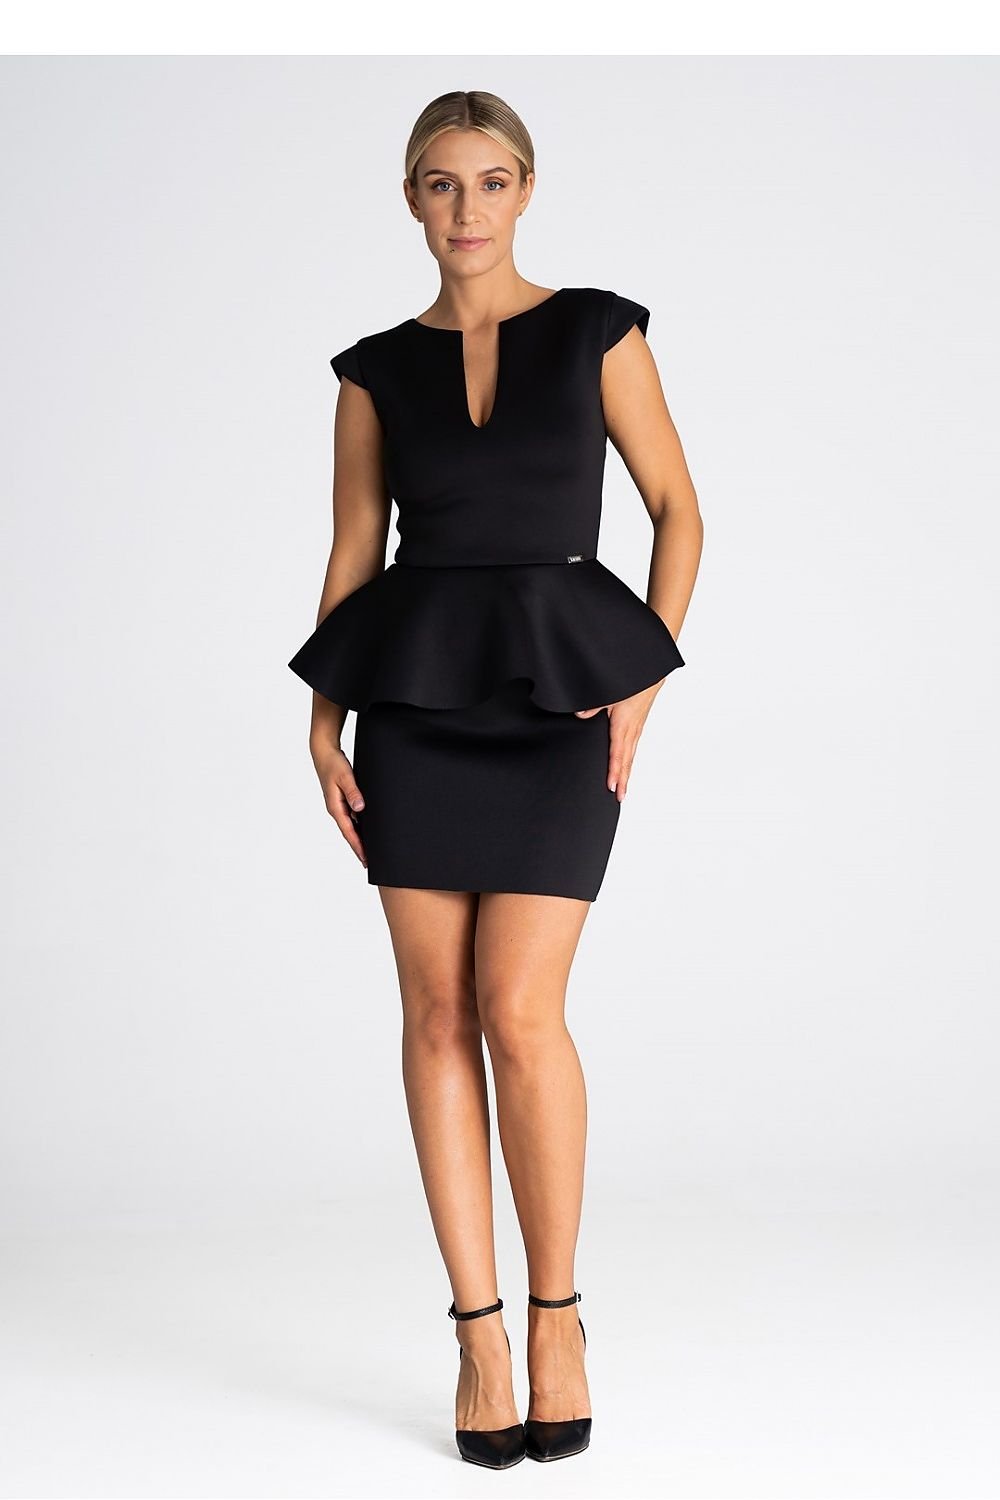 Dress Sukienka Model M975 Black - Figl - Venus Trendy Fashion Online